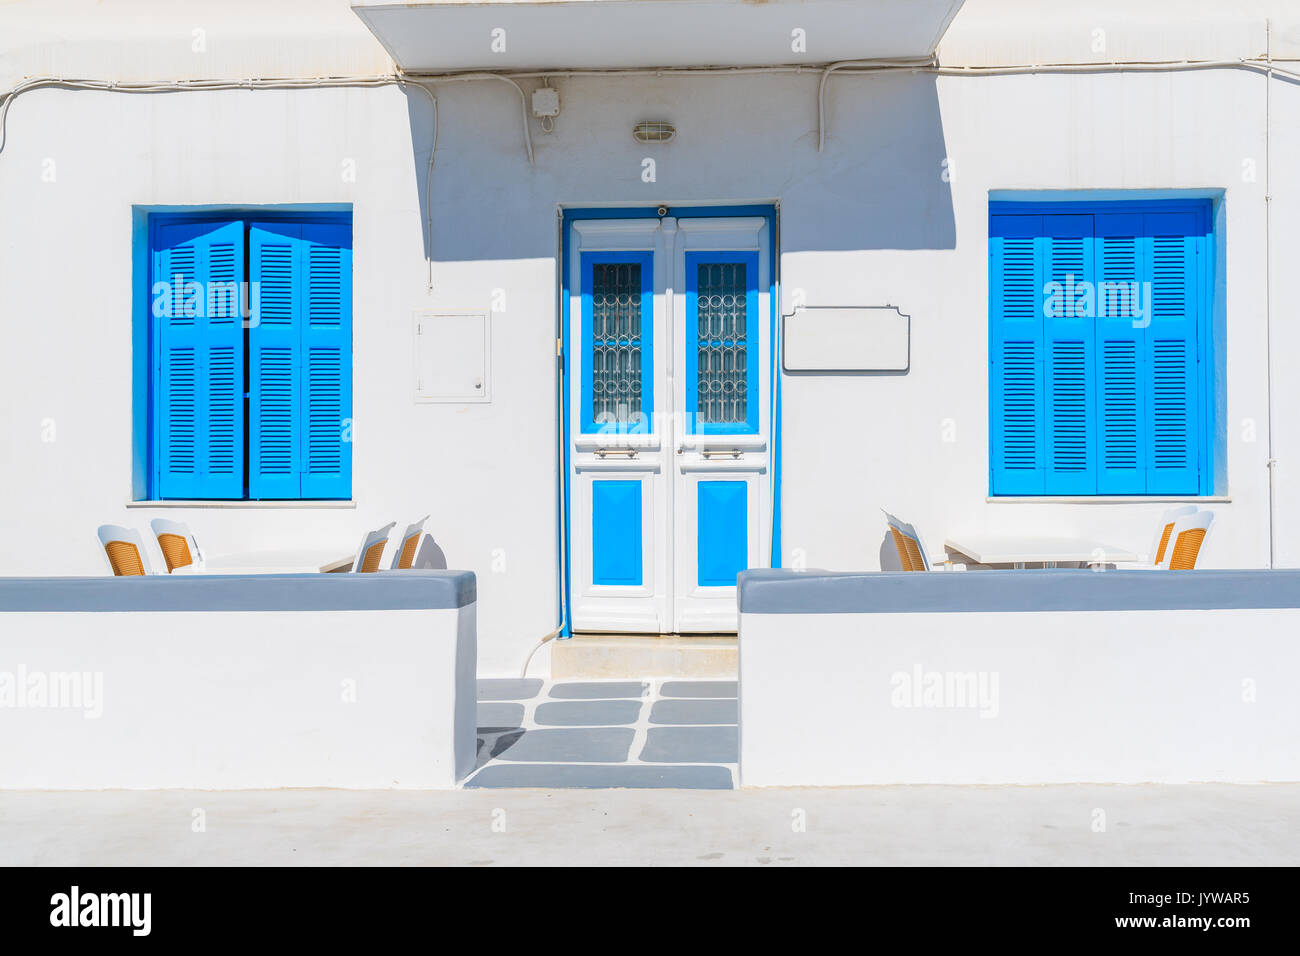 Vorderansicht eines typischen weißen Haus mit blauen Fenstern in der Stadt Mykonos, Mykonos, Griechenland Stockfoto